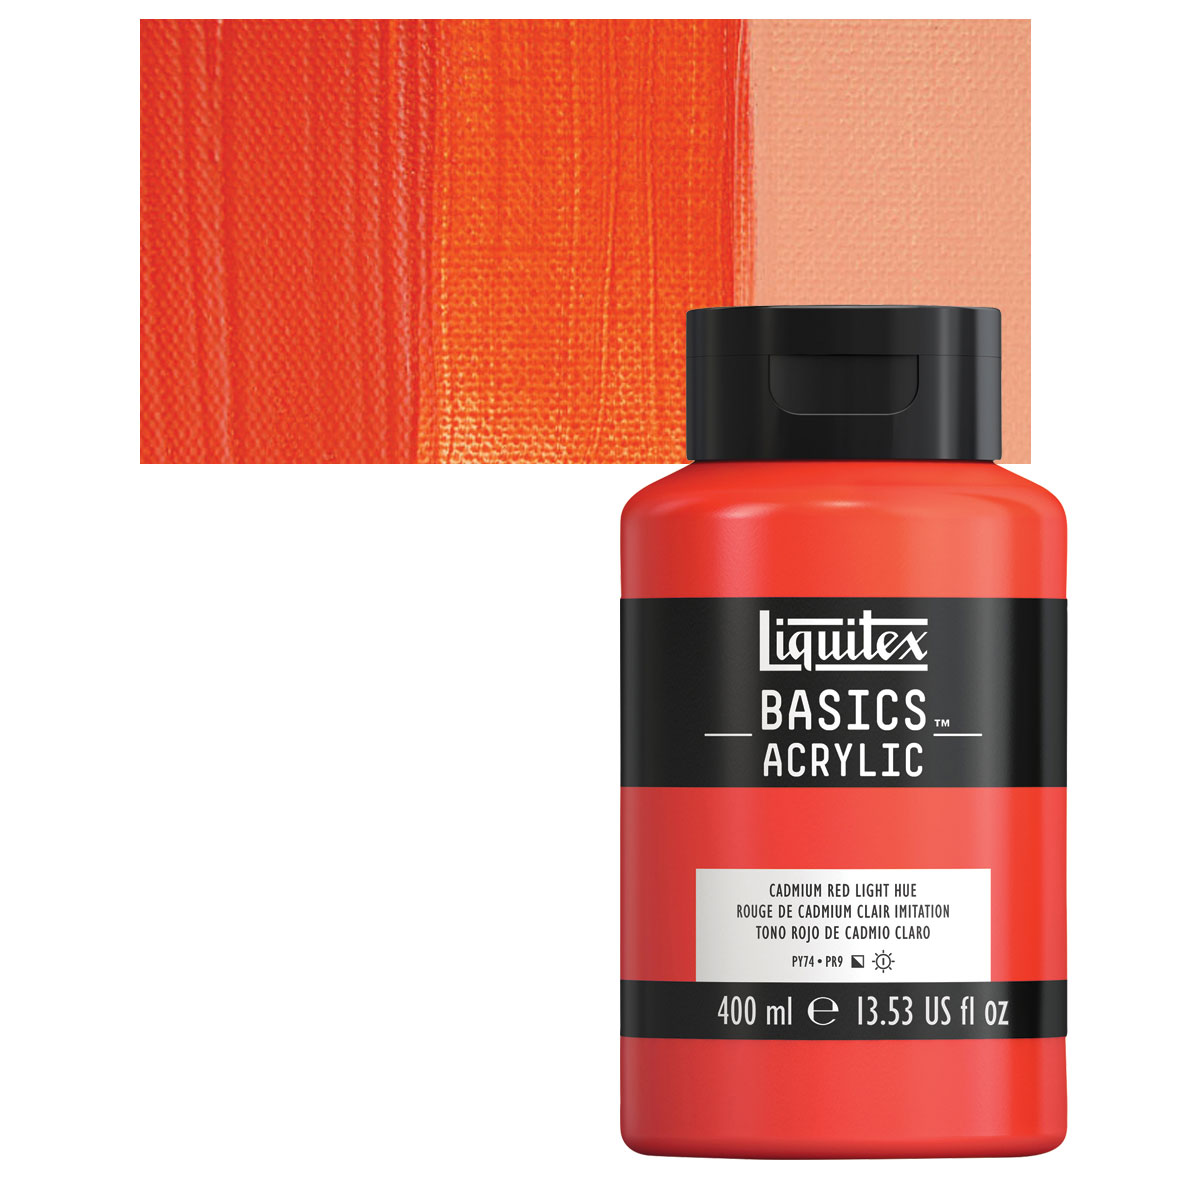 rense Rendition kor Liquitex Basics - Cadmium Red Light Hue, 13.5 oz Squeeze Bottle| Utrecht  Art Supplies